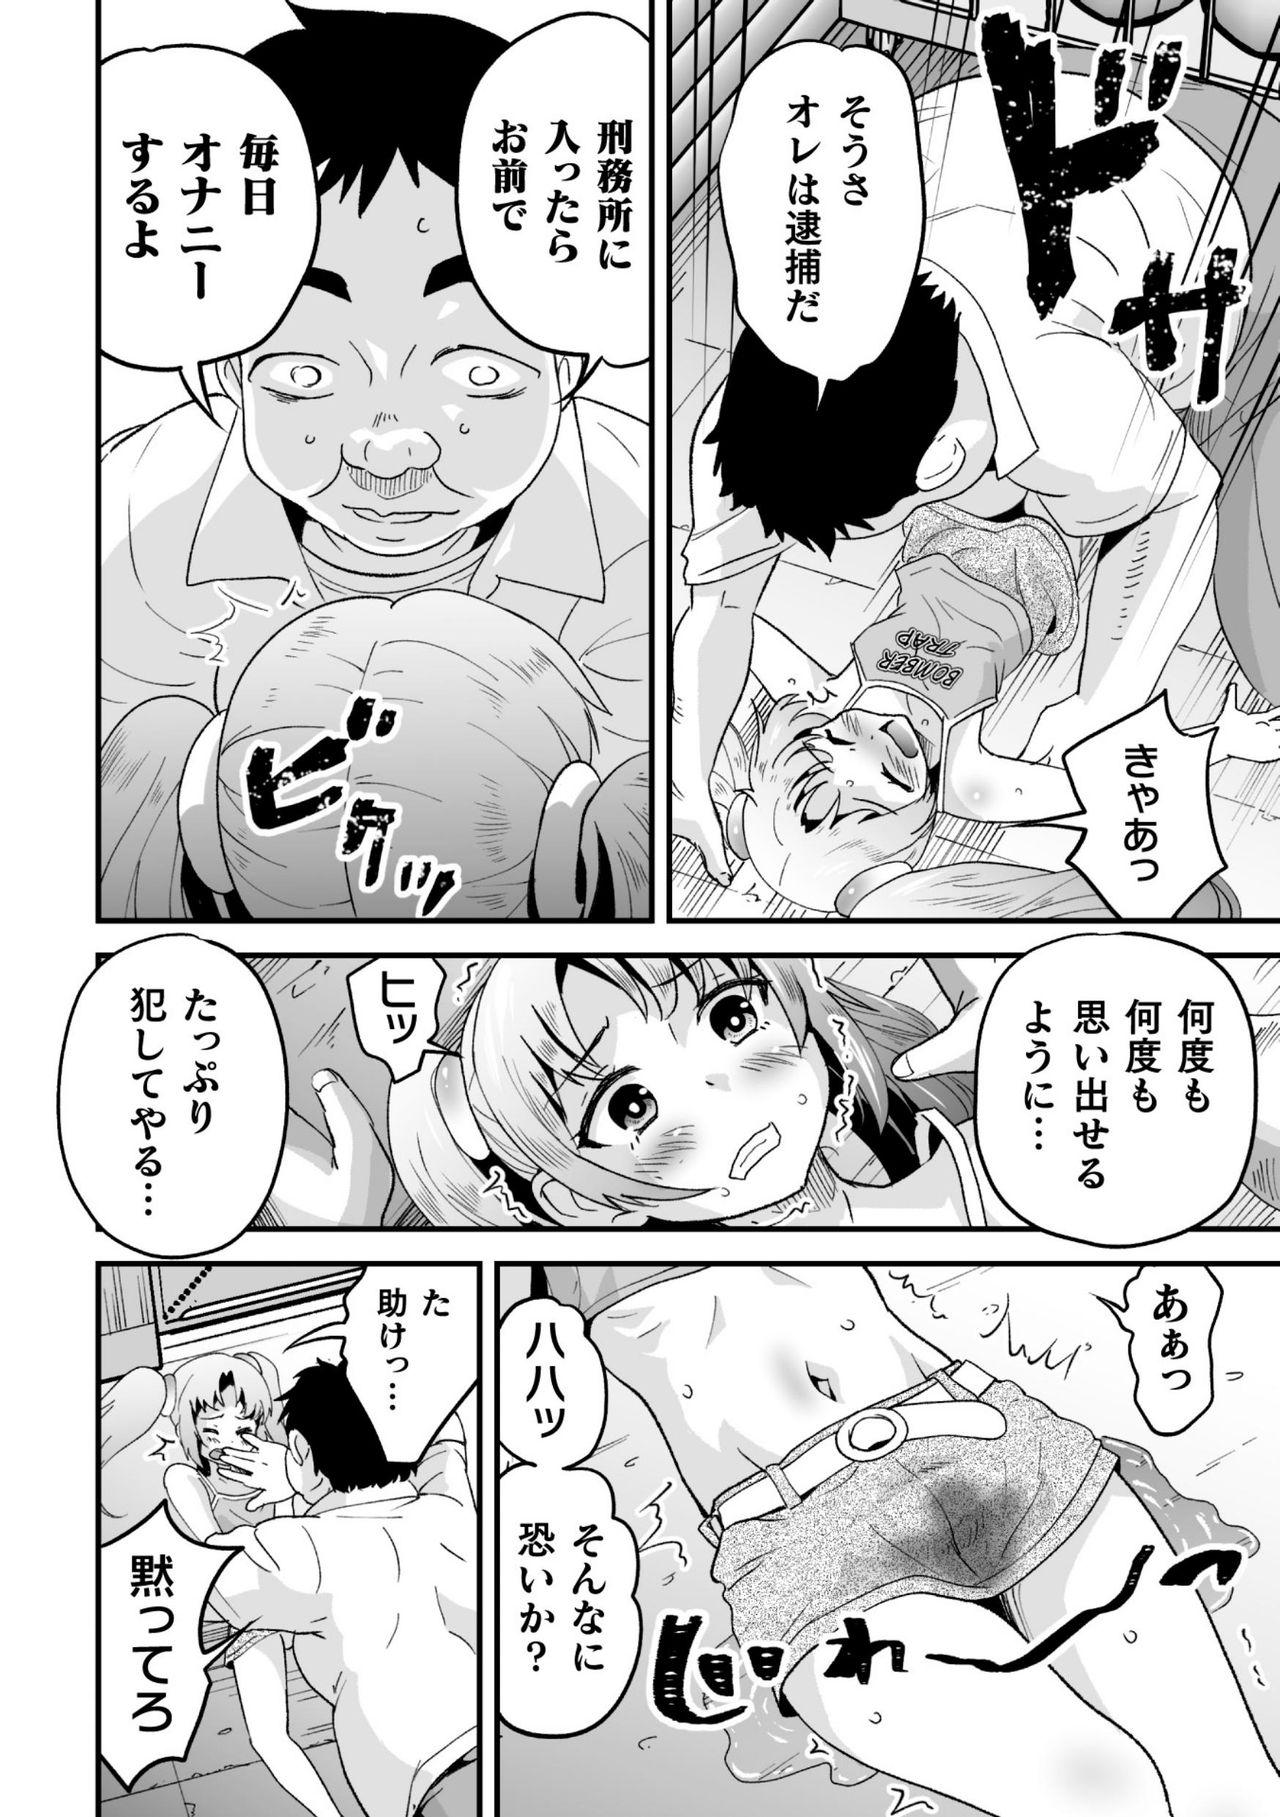 2D Comic Magazine Mesugaki Otokonoko Seisai Ikiru Shiriana o Wakarase Bou de Goshidou Gobentatsu! Vol. 2 51